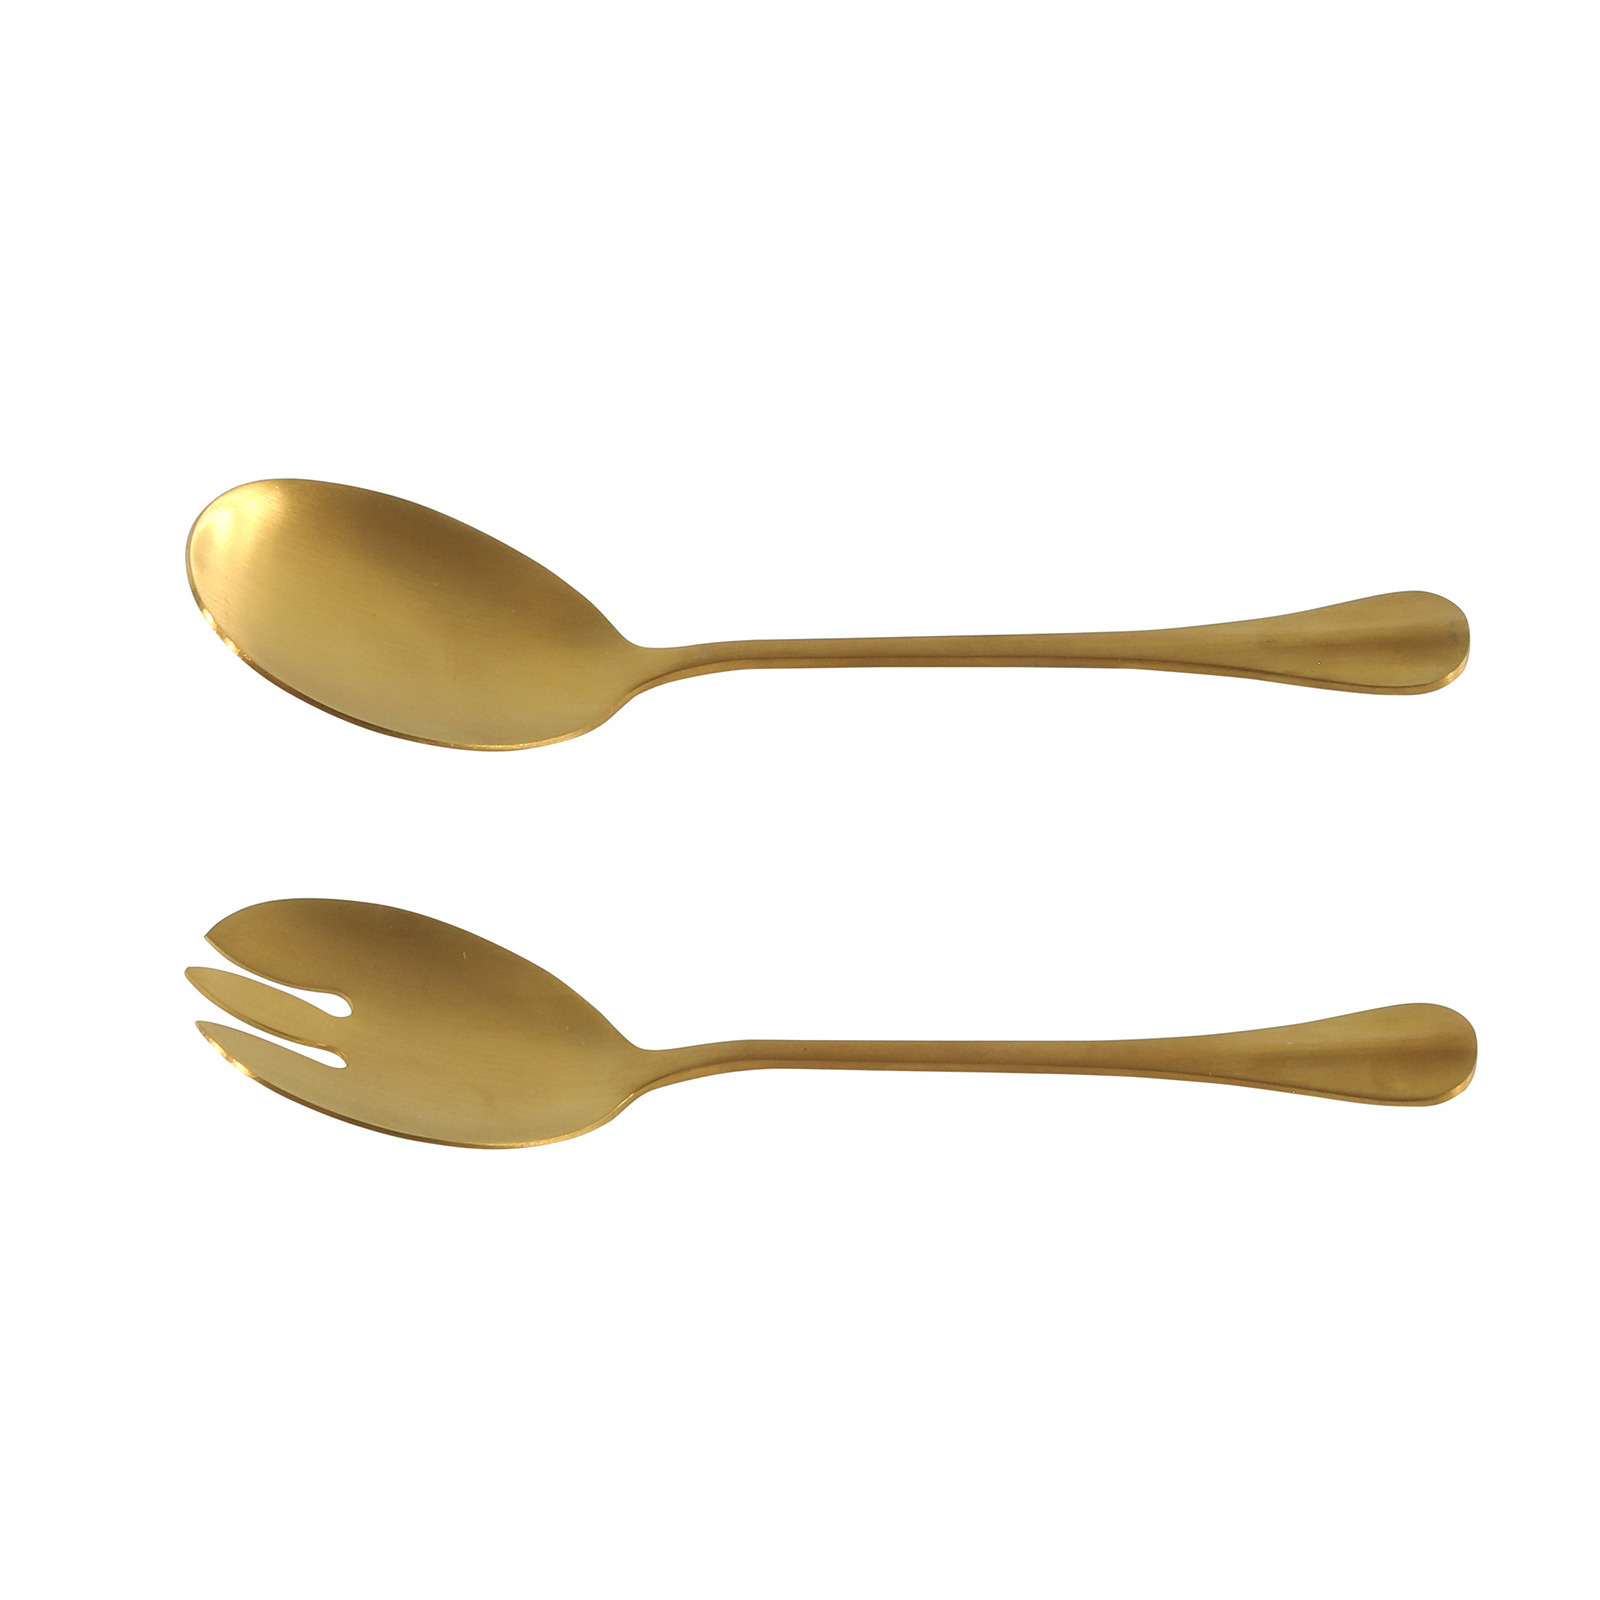 RVS sla-salade vork en lepel goud 21,5 cm